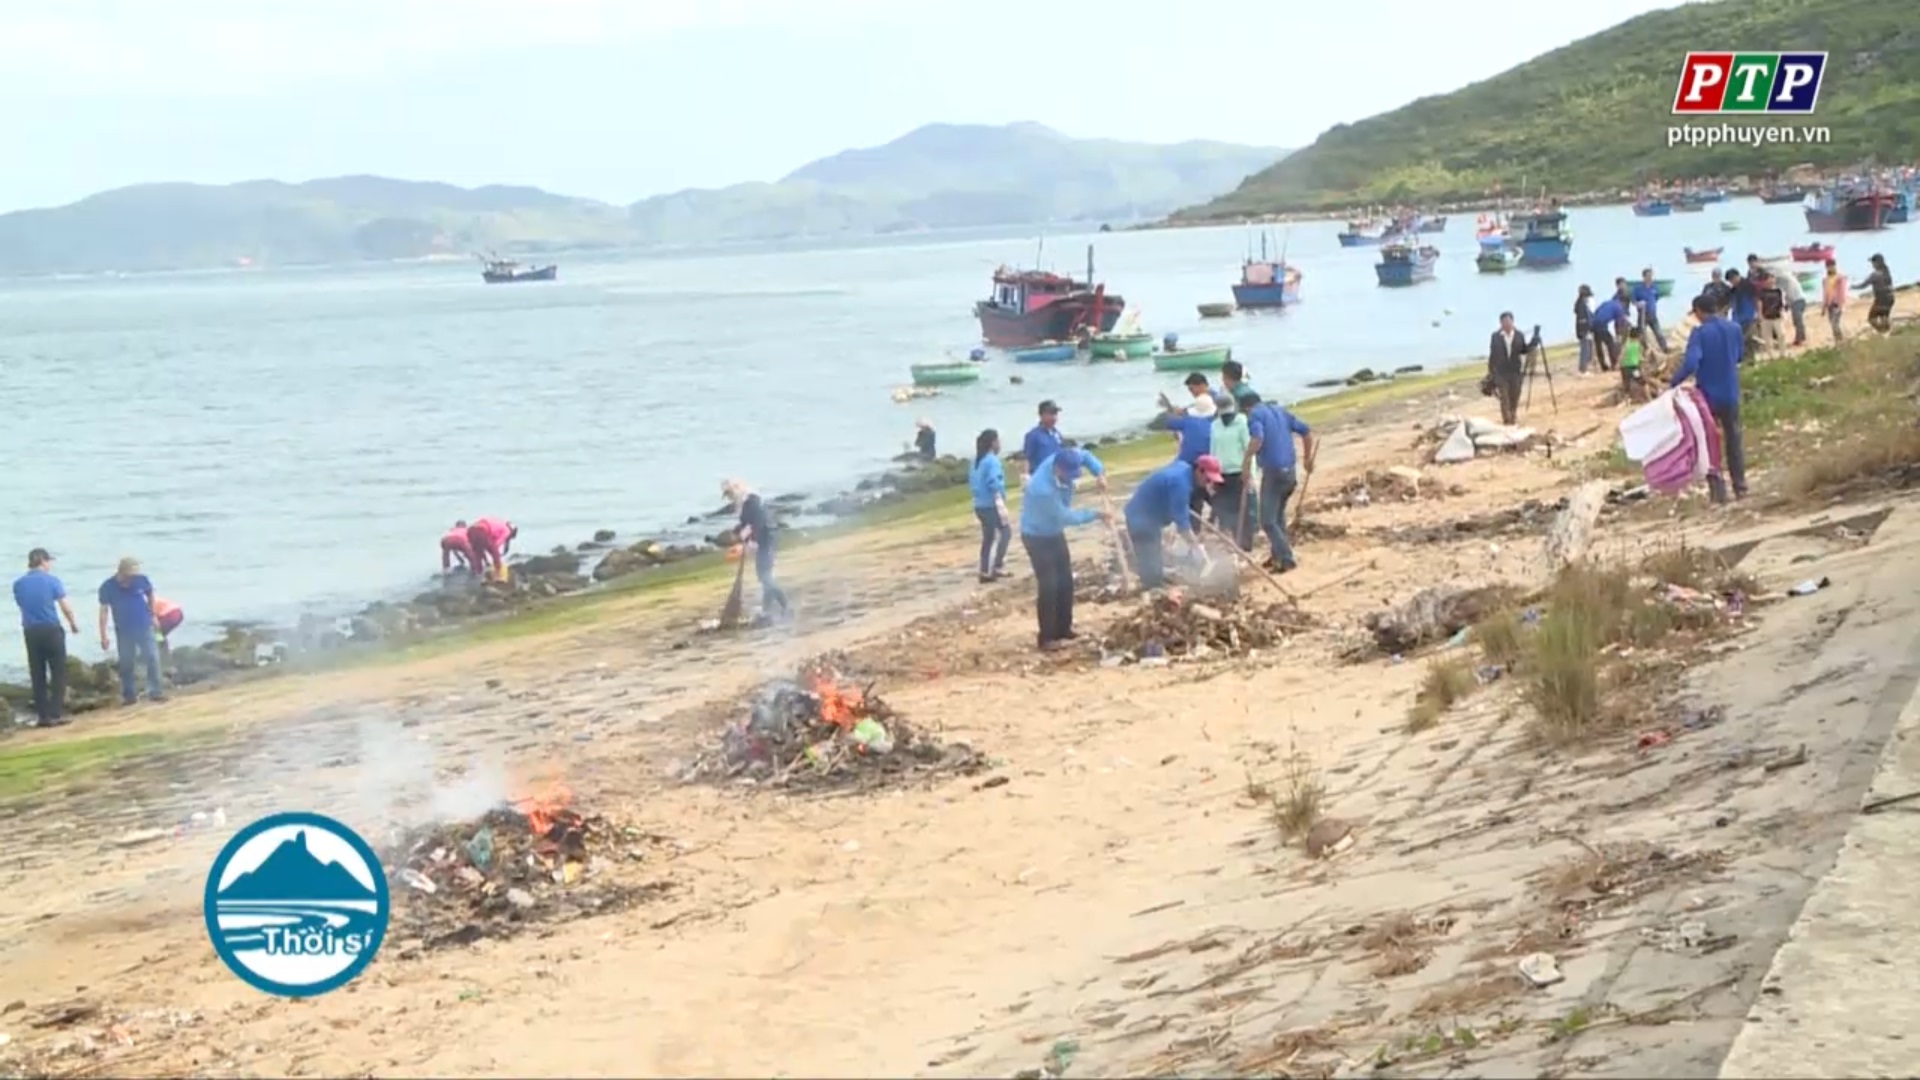 Tháng Thanh niên 2019: Tuổi trẻ Phú Yên hướng về biển đảo quê hương